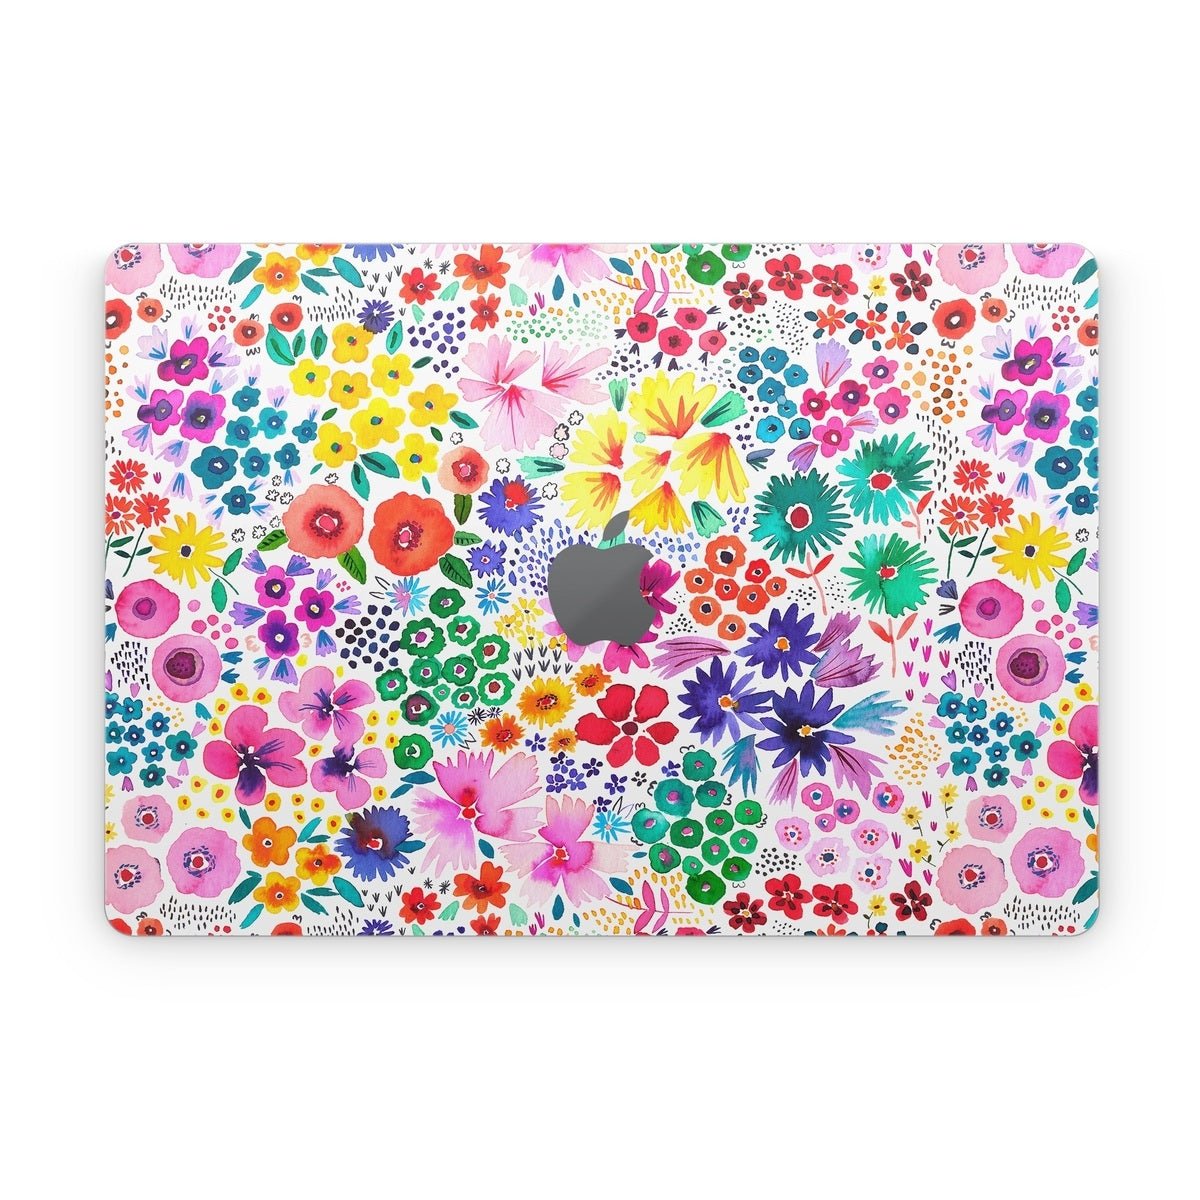 Artful Little Flowers - Apple MacBook Skin - Ninola Design - DecalGirl